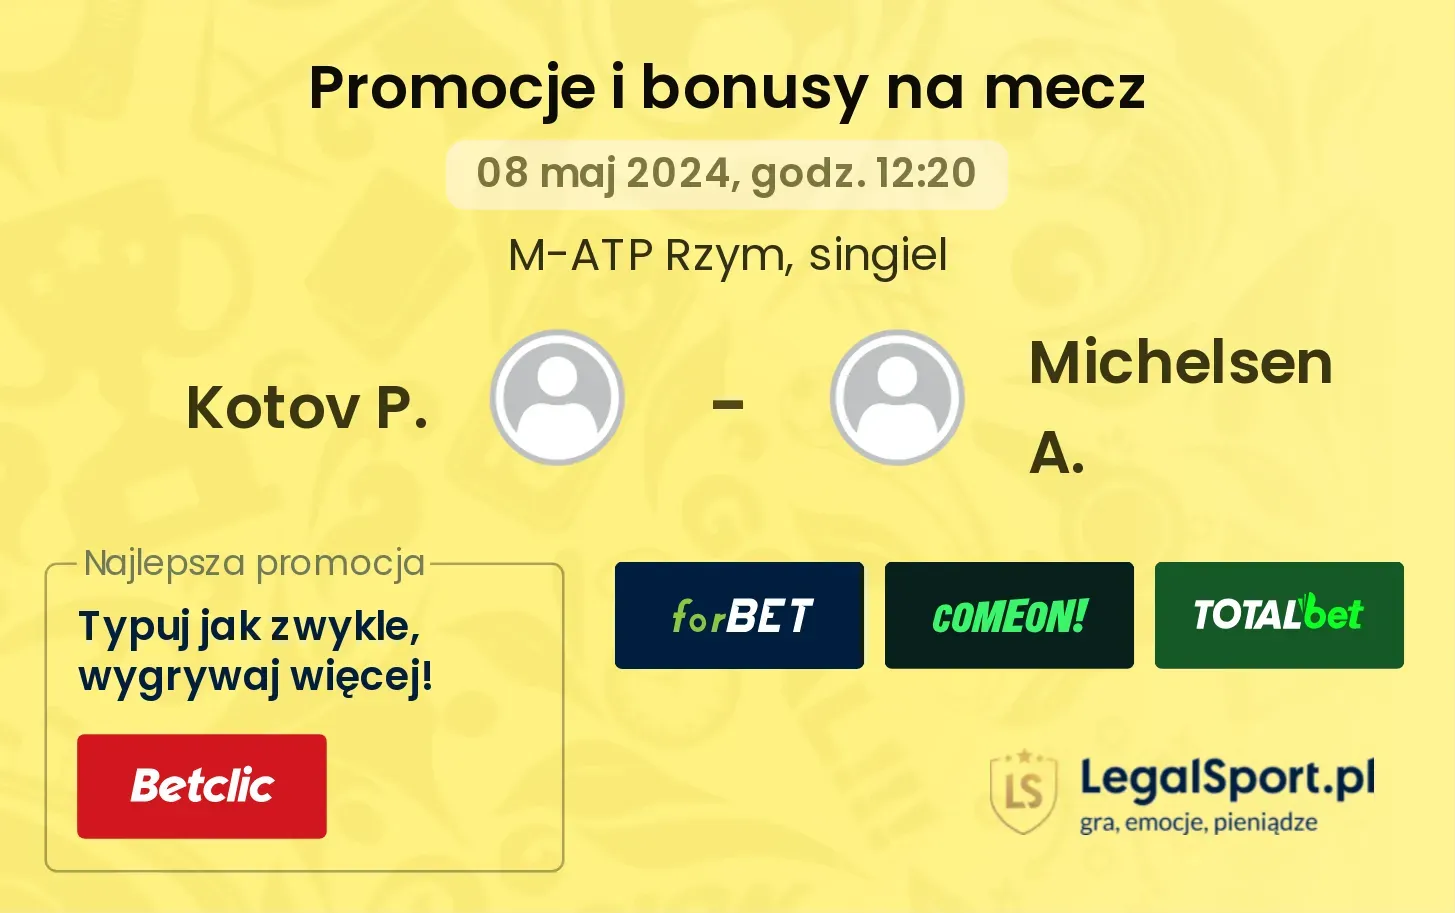 Kotov P. - Michelsen A. promocje bonusy na mecz